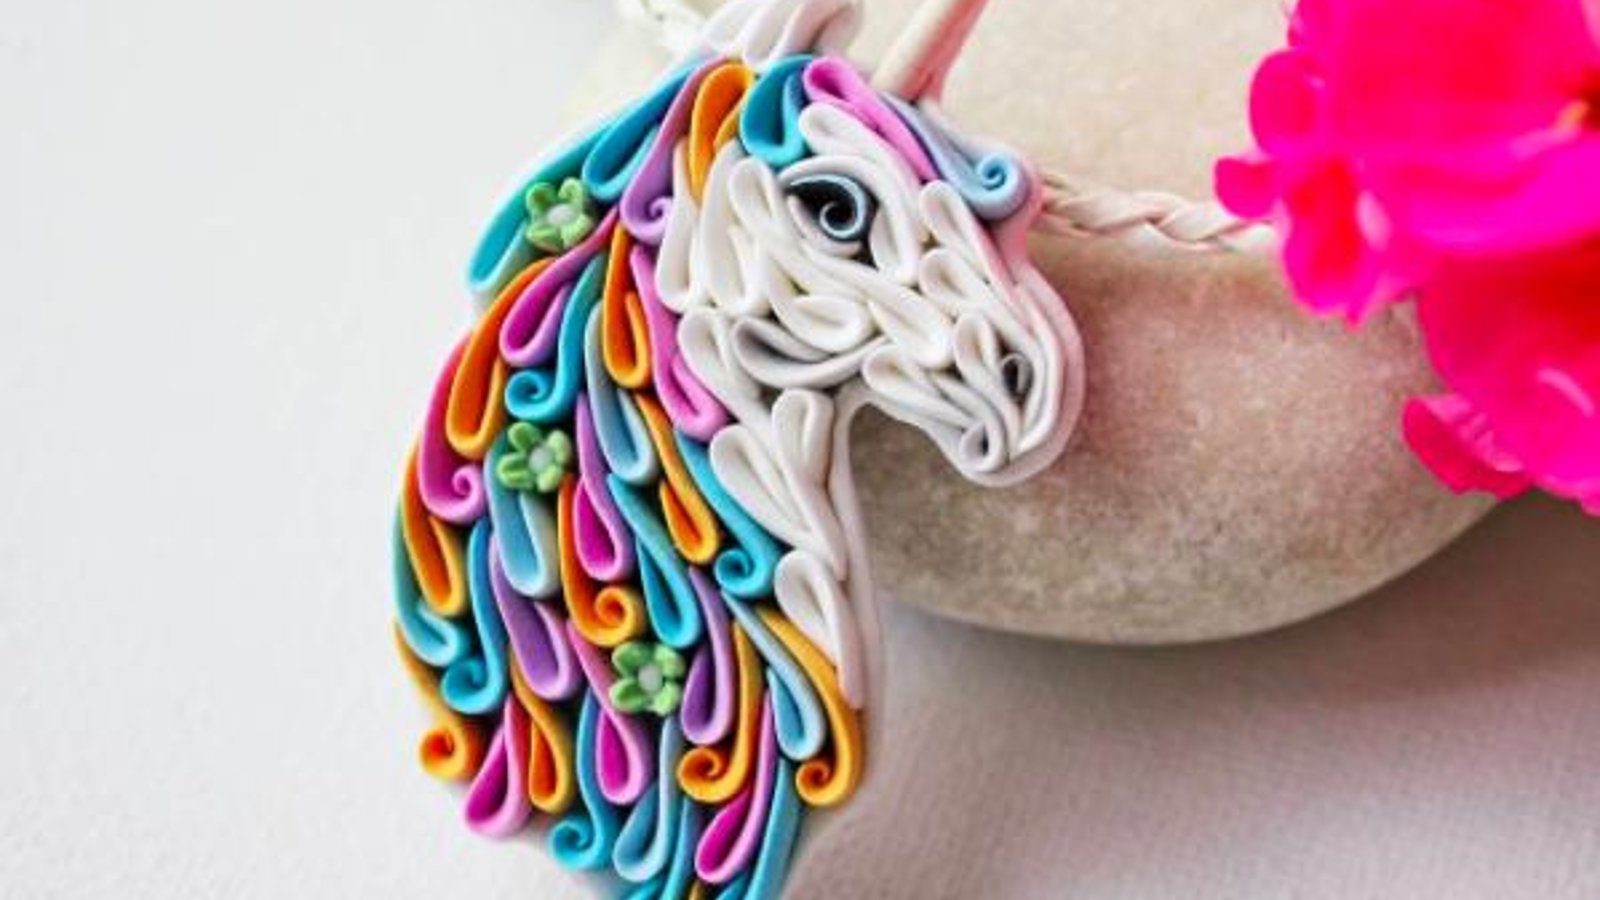 Une artiste confectionne de magnifiques bijoux uniquement en polymère